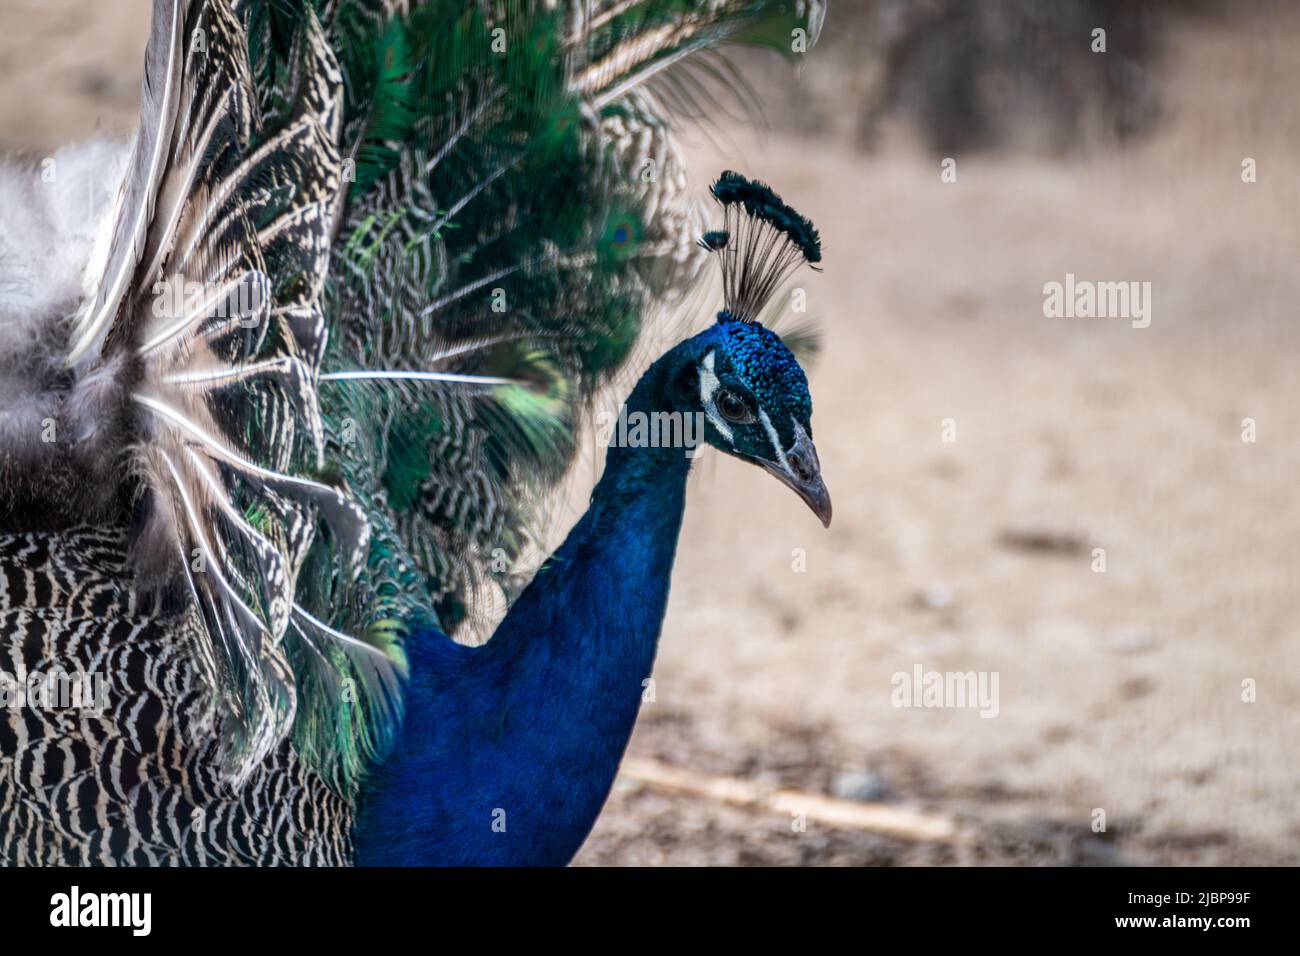 Blauer Pfau männlicher Pfau mit langen fächerähnlichen Scheitelfedern mit bunten Augenspangen anmutige Nahaufnahme auf verschwommenem Hintergrund Stockfoto